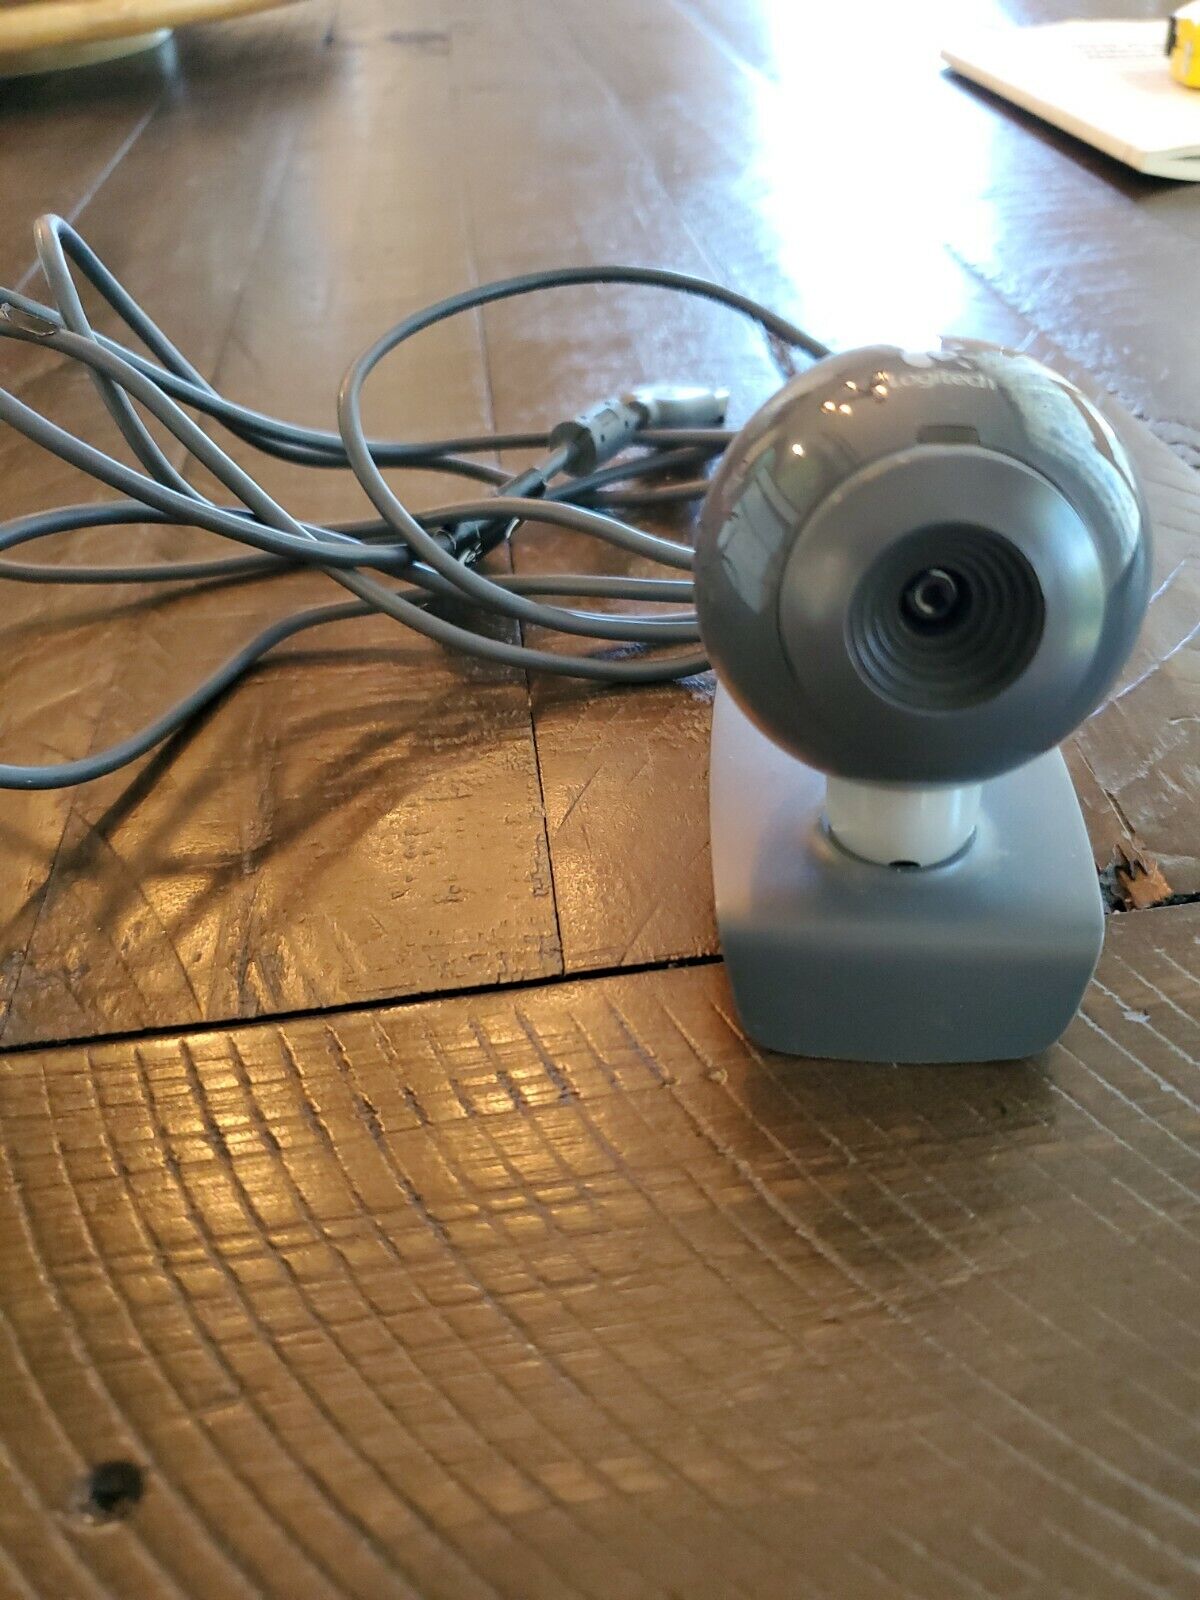 Logitech Webcam C200 USB V-U0011 Manual Focus Black Grey TESTED